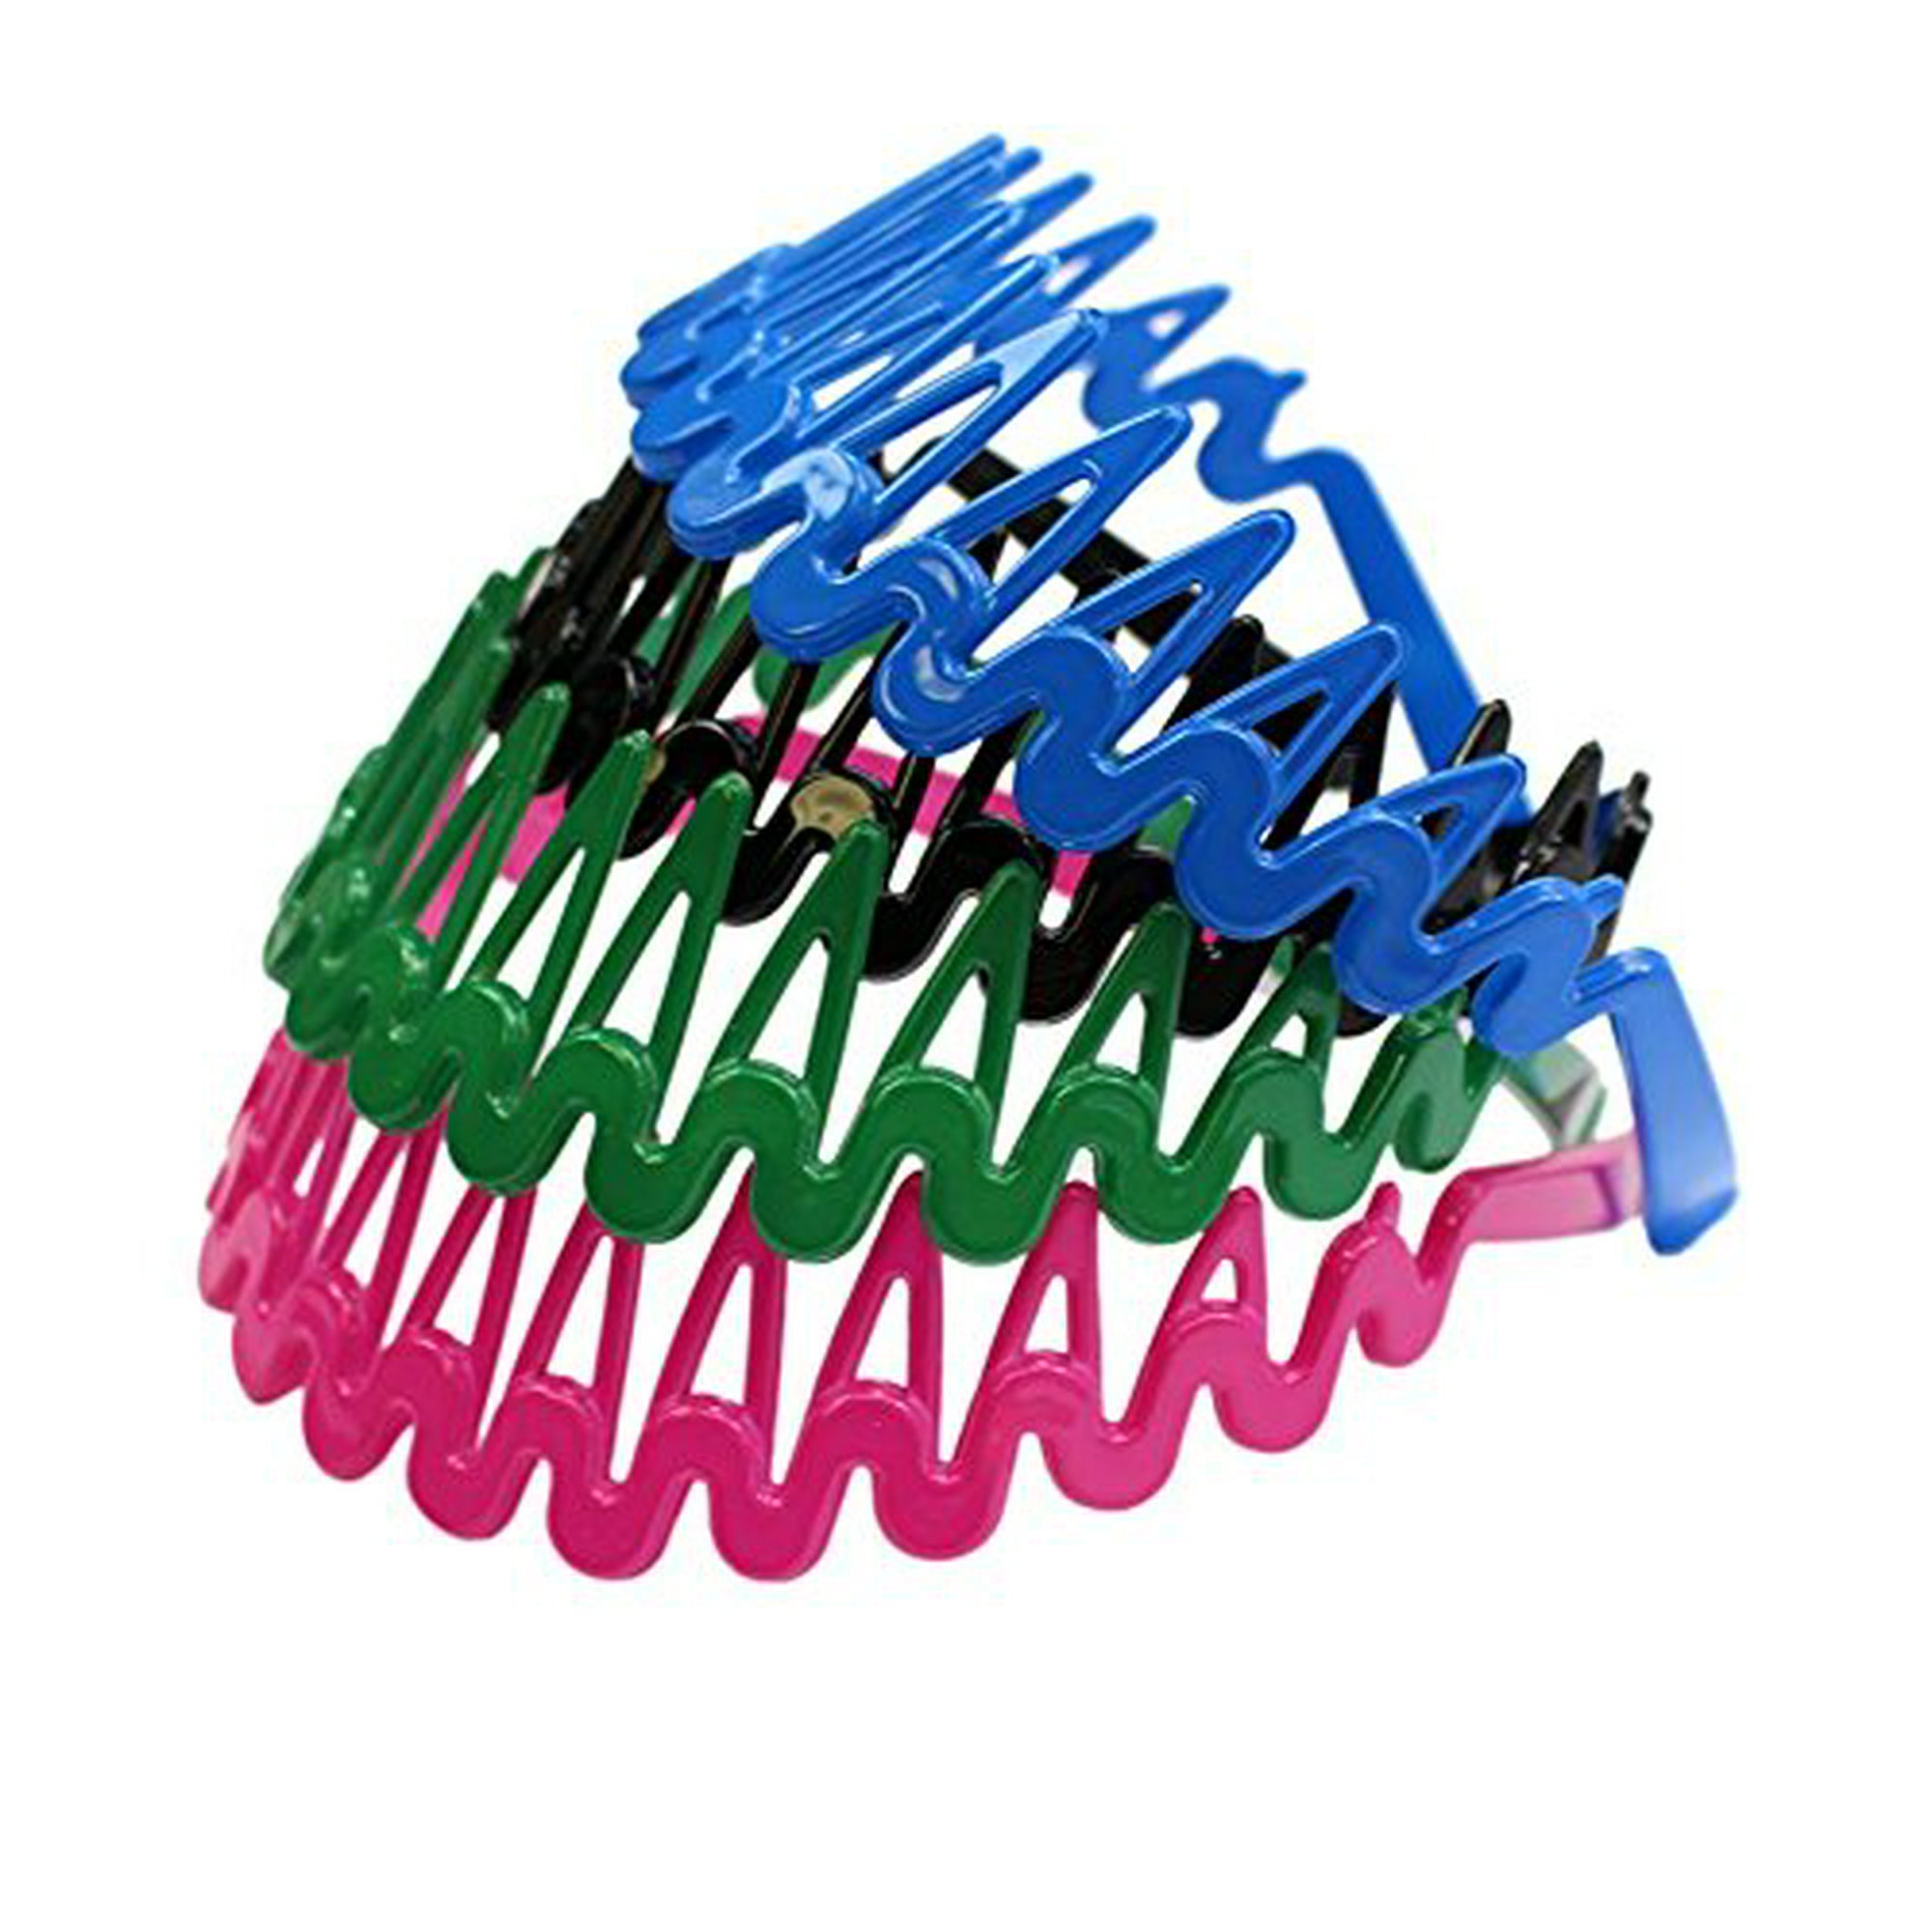 Plastic Headband With Teeth 12 Hard Headbands Bright Color Headbands By Coveryourhair Walmart Canada